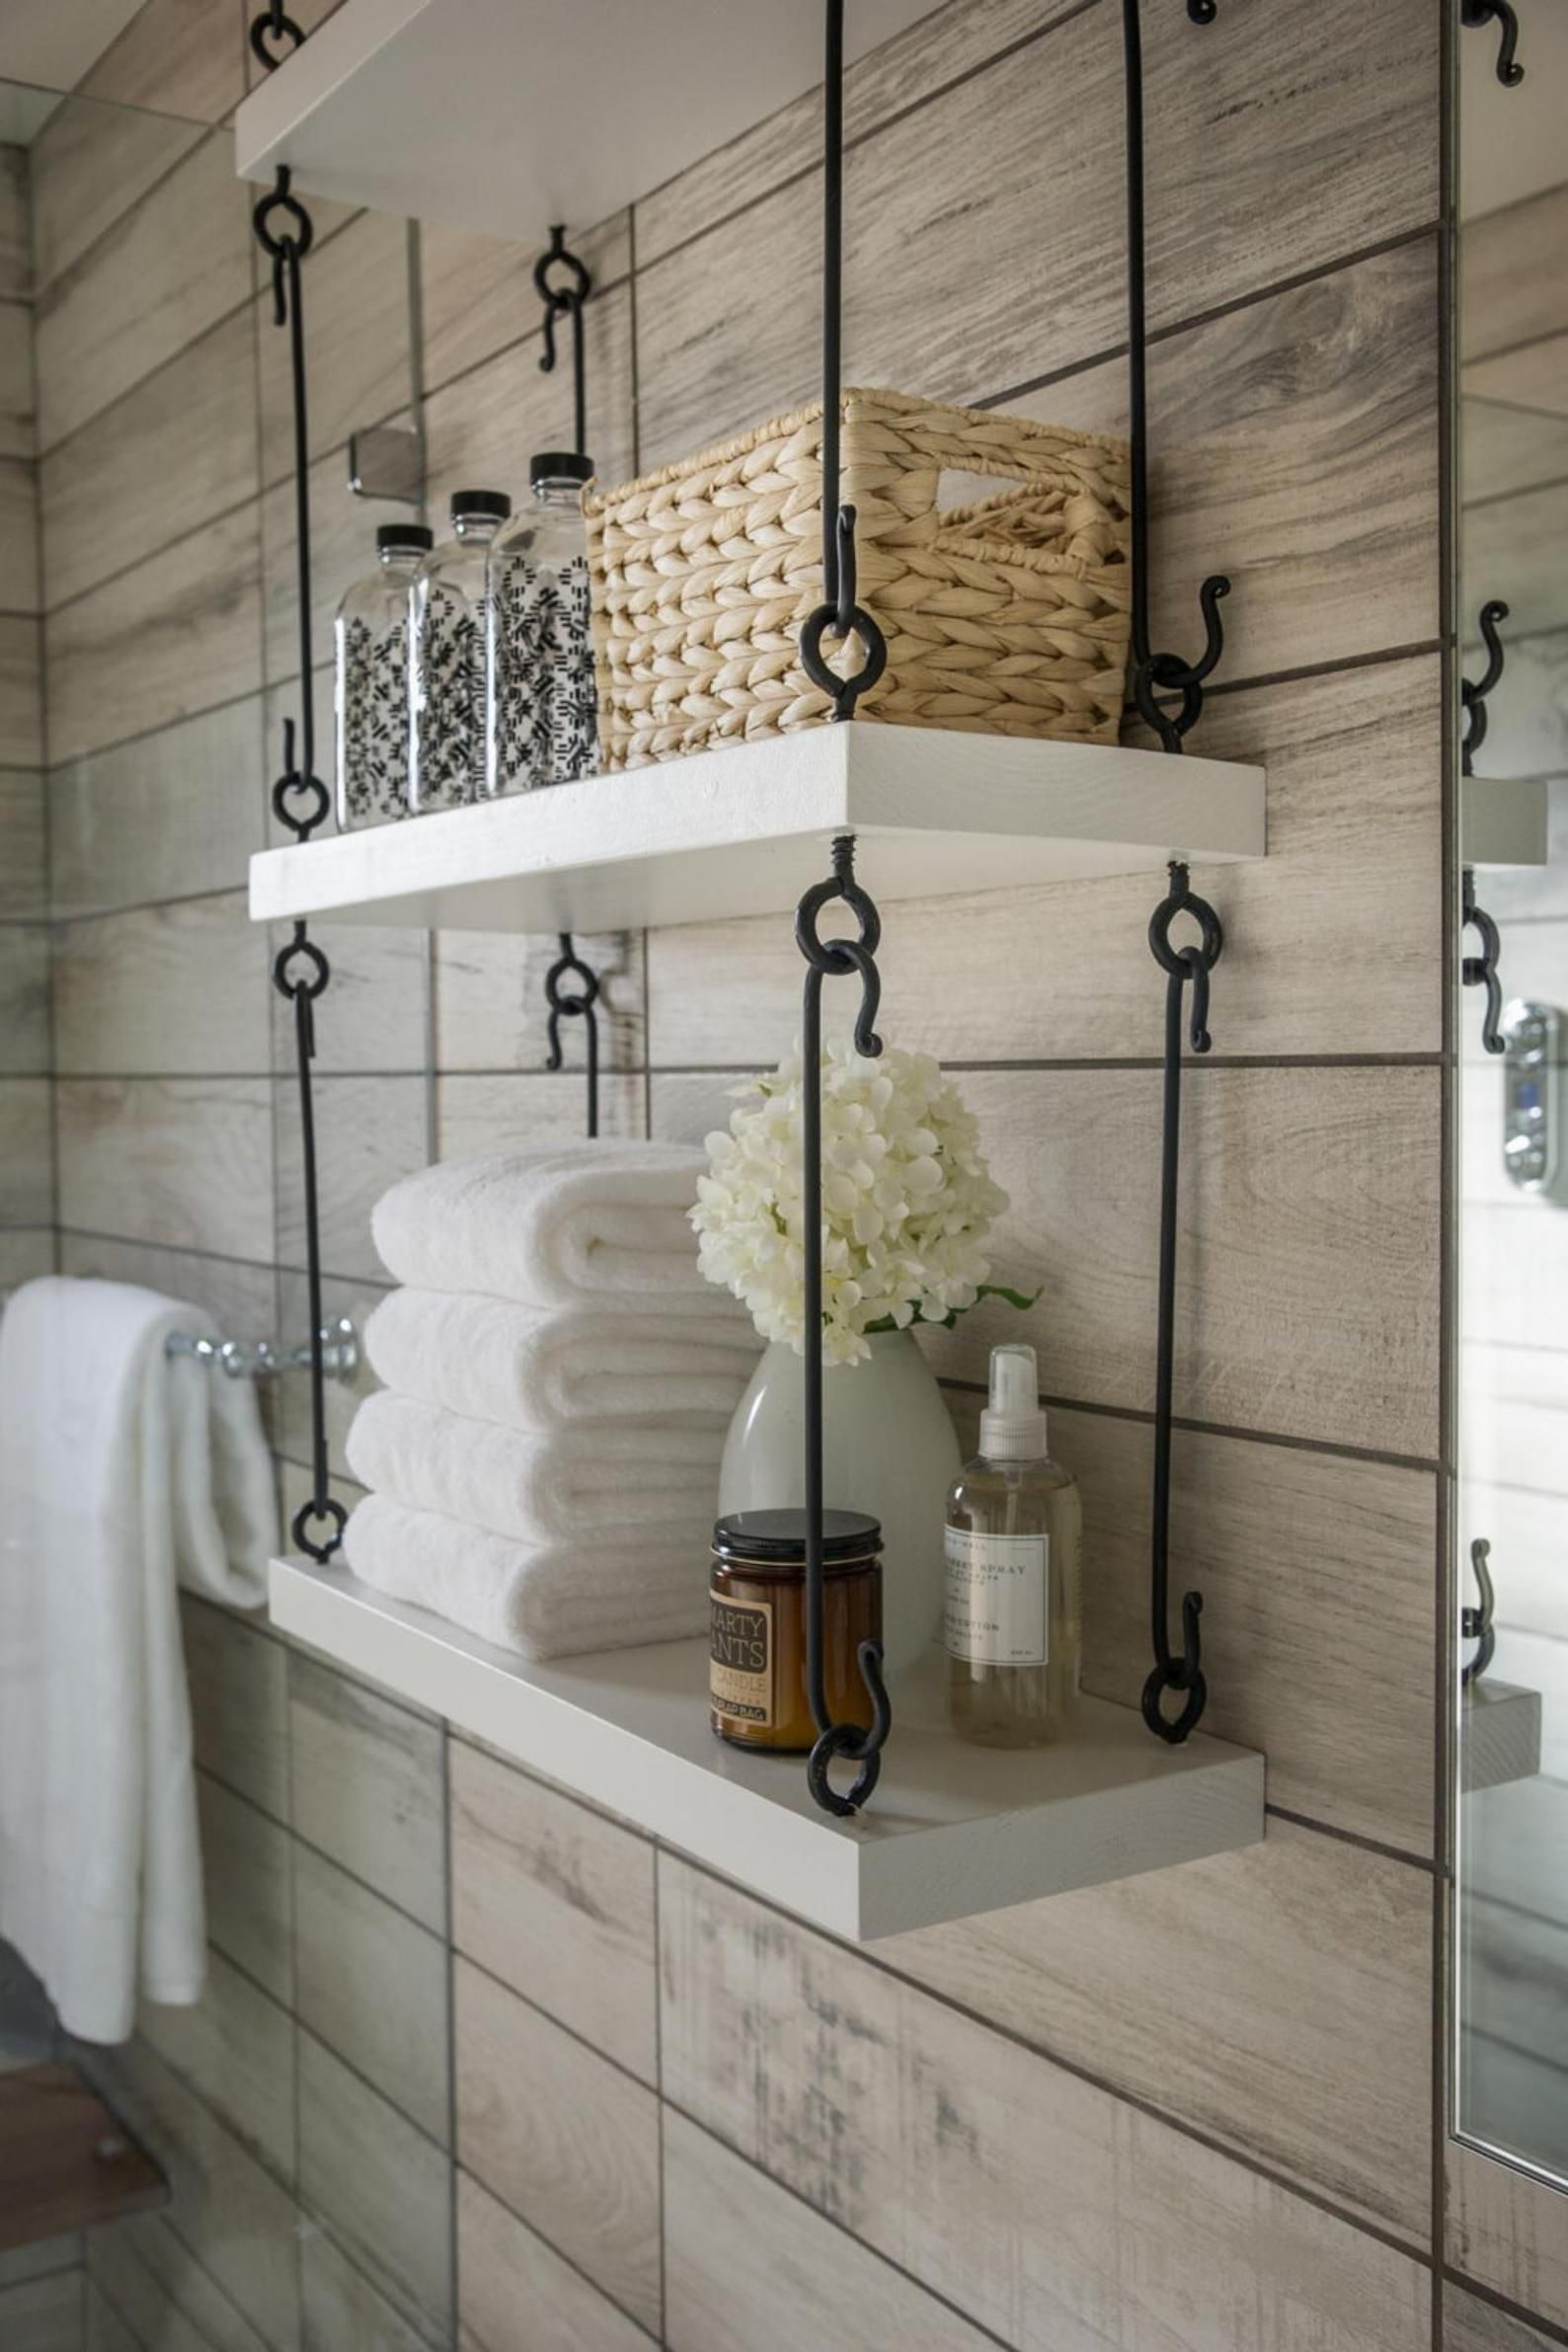 Ремонт ванной комнаты своими руками — Лучшие способы создать красивый интерьер! (71 фото)